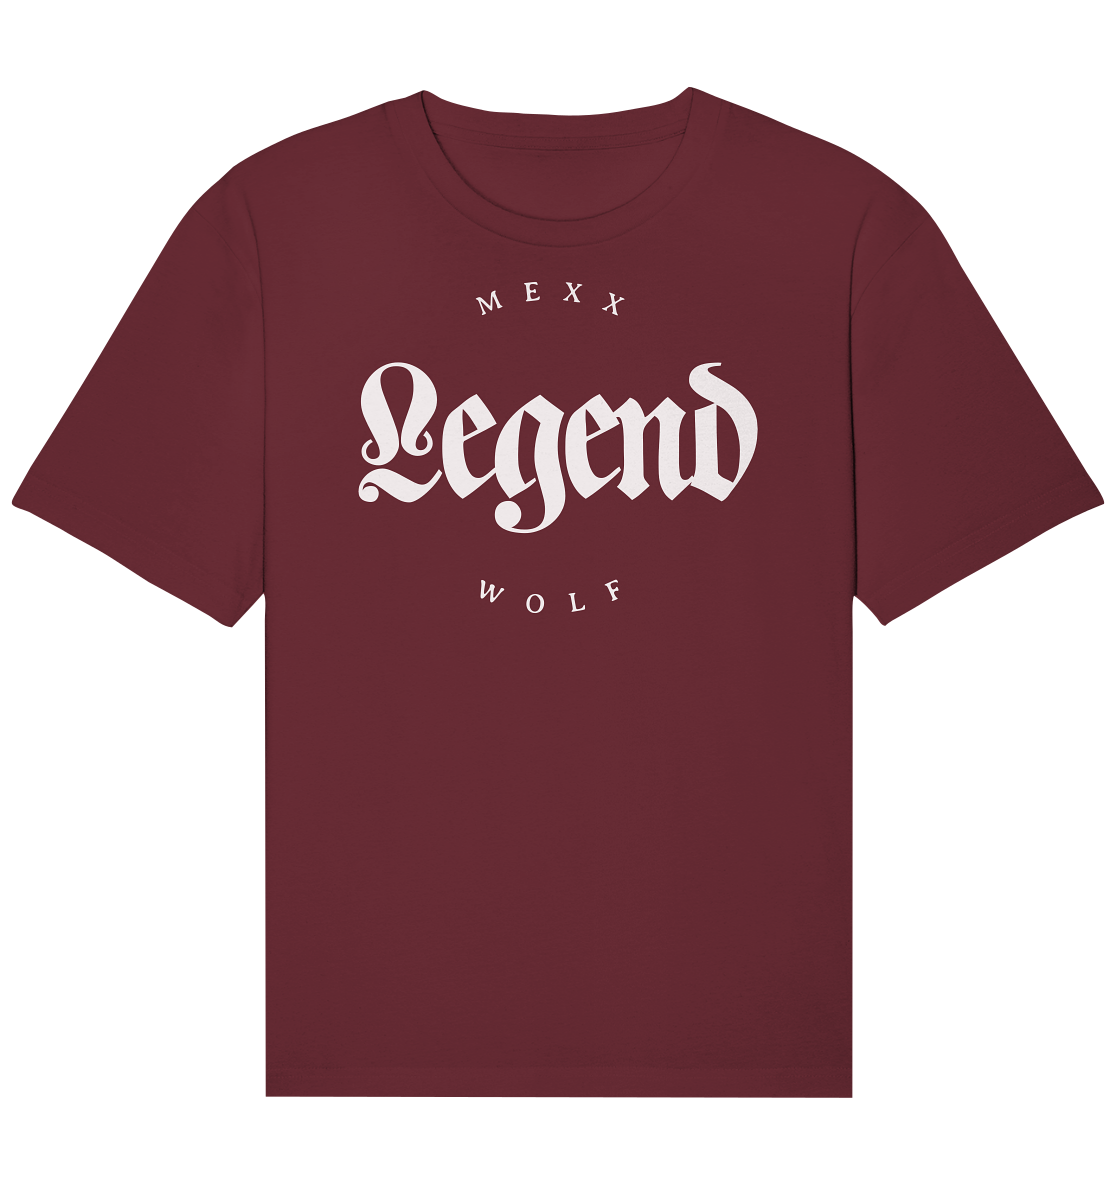 MW Legend - Organic Relaxed Shirt